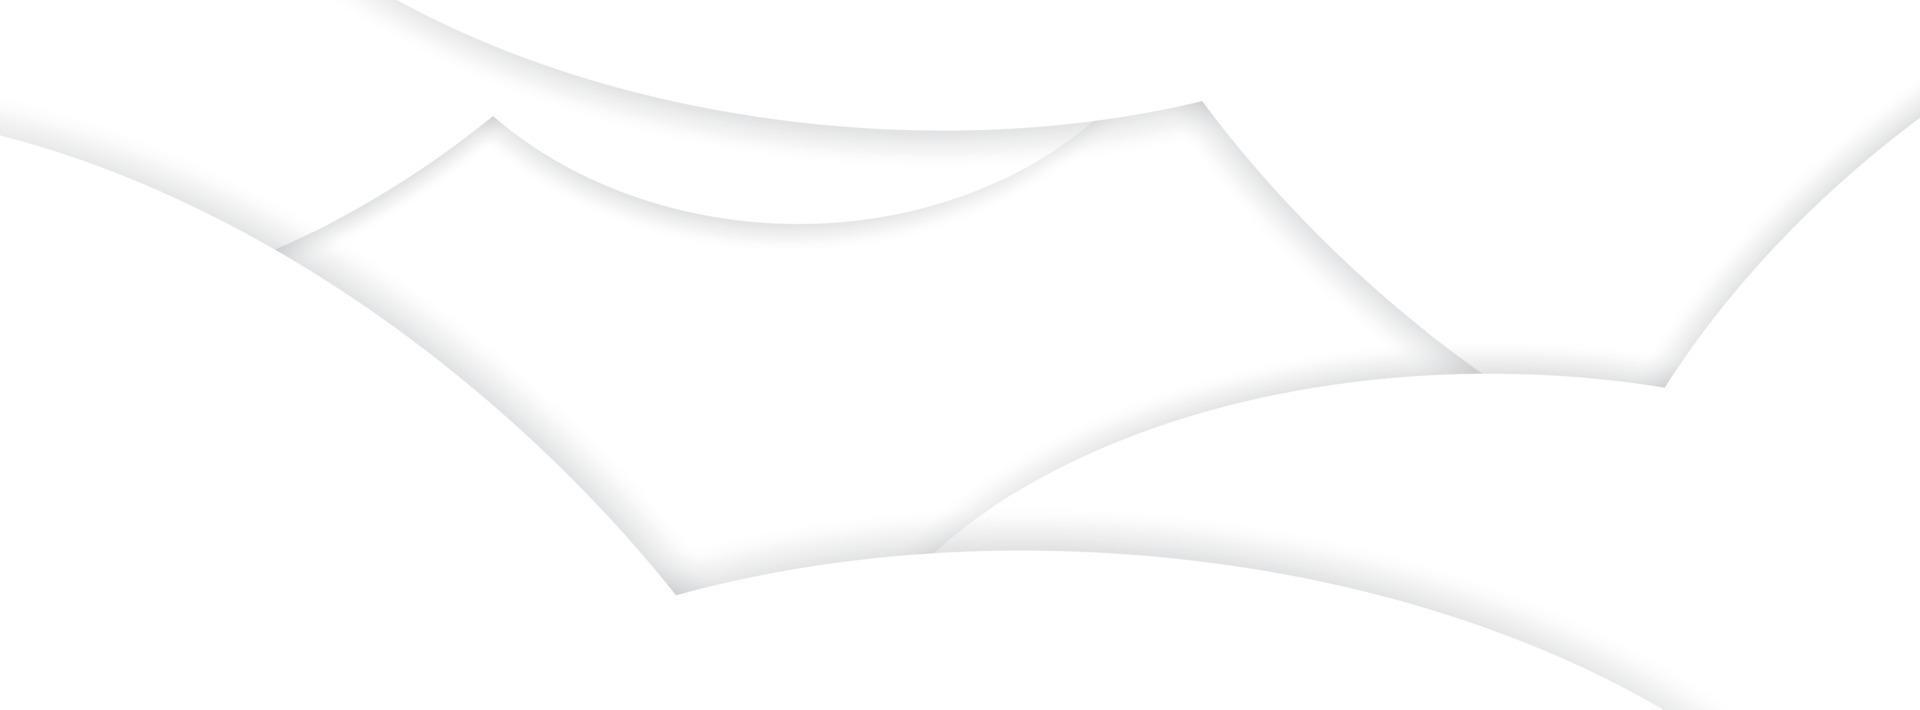 design de fundo branco abstrato com camadas de curva e padrão de sombra. modelo de estilo de corte de papel vetorial para banner de negócios ou convite formal. vetor